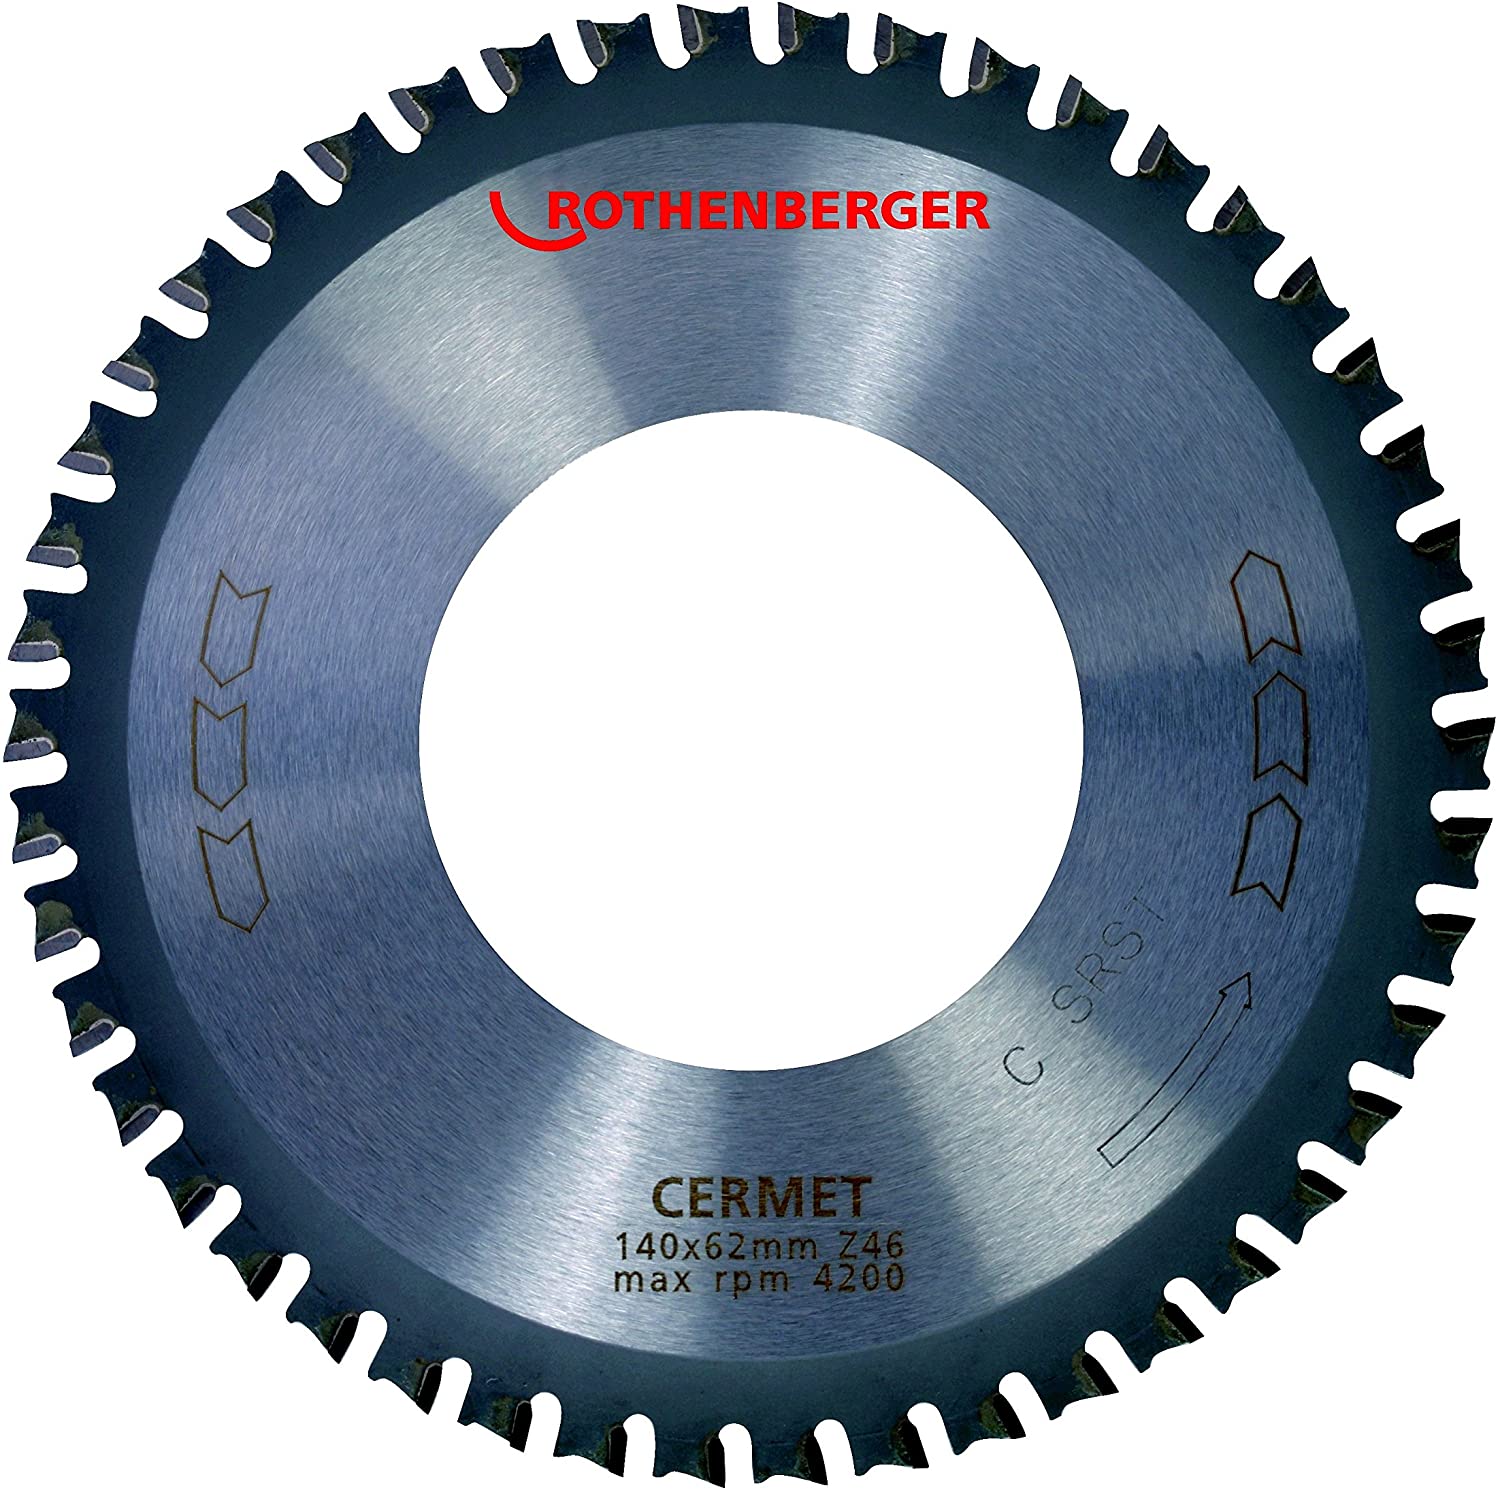 ROTHENBERGER Керамичен циркулярен диск ф140x62 мм (056705)